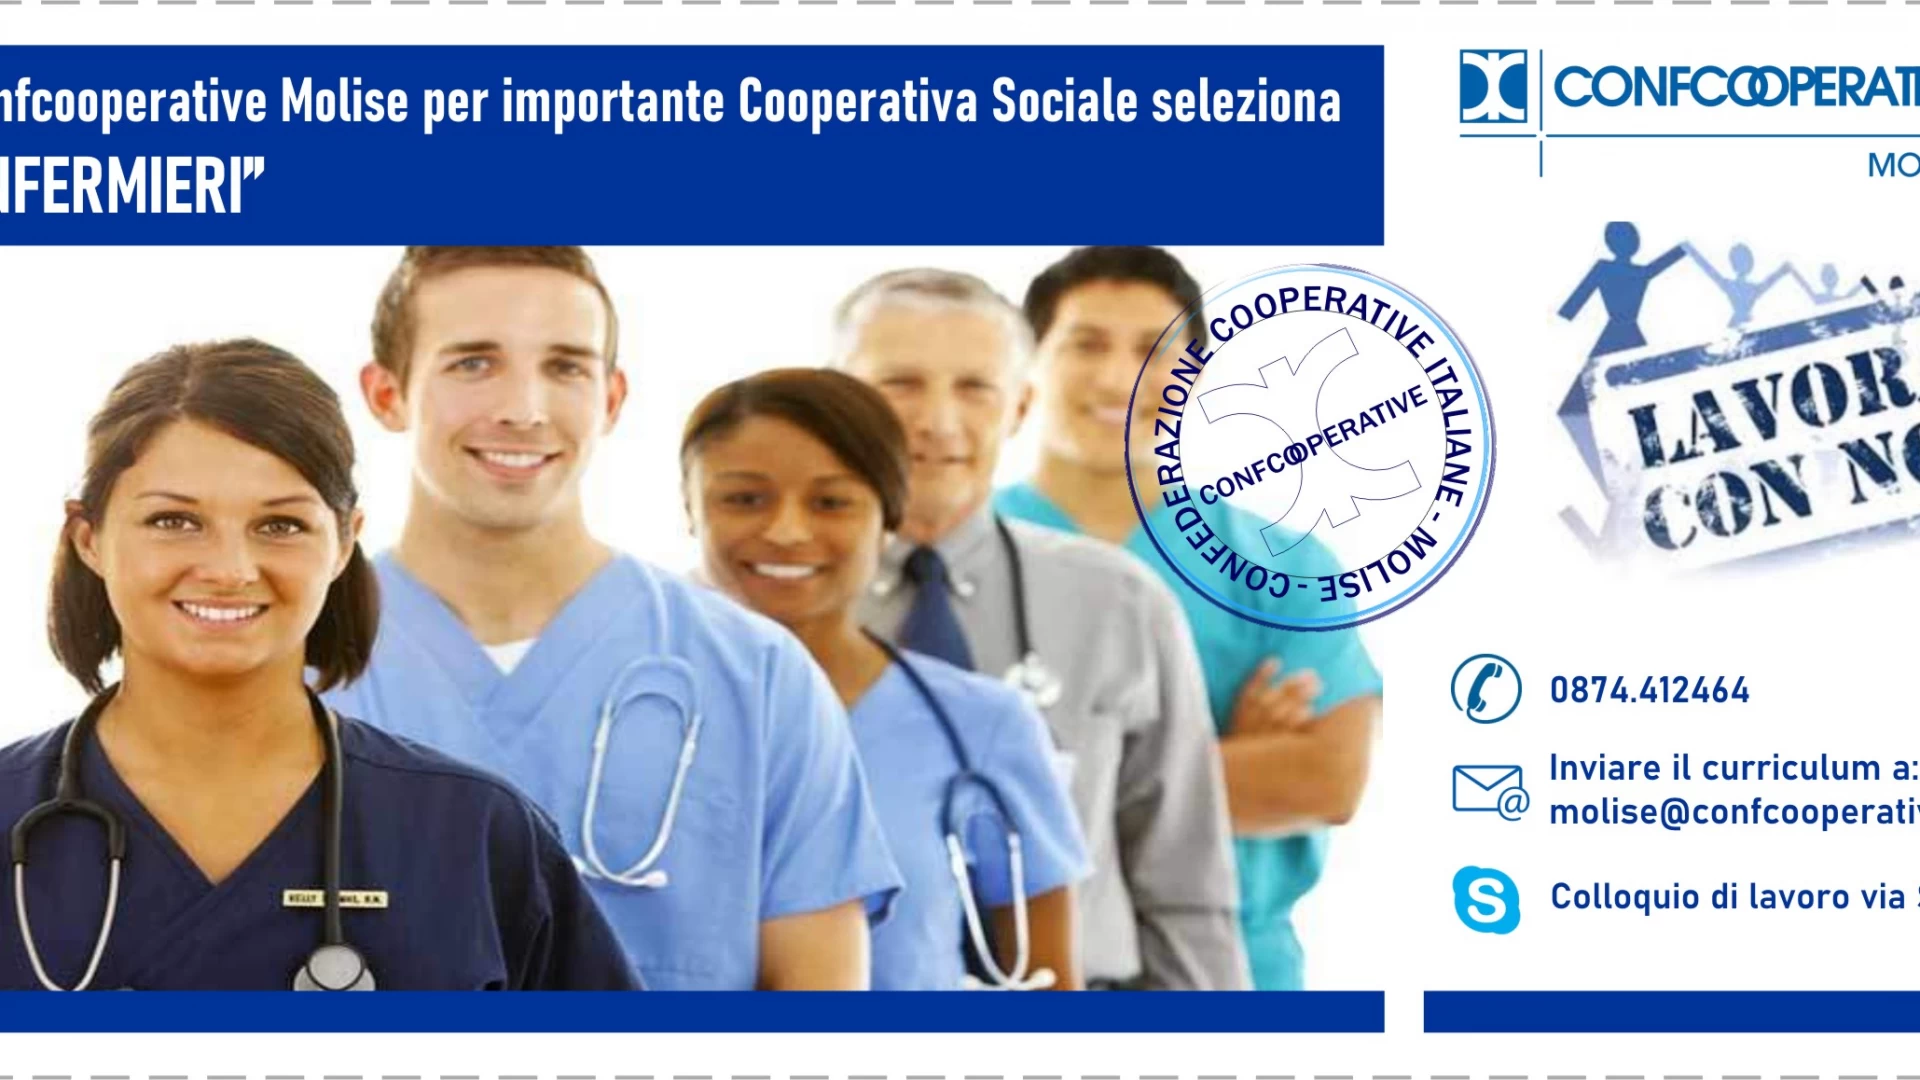 Confcooperative Molise selezione infermieri per importante cooperativa sociale. Leggi l'avviso